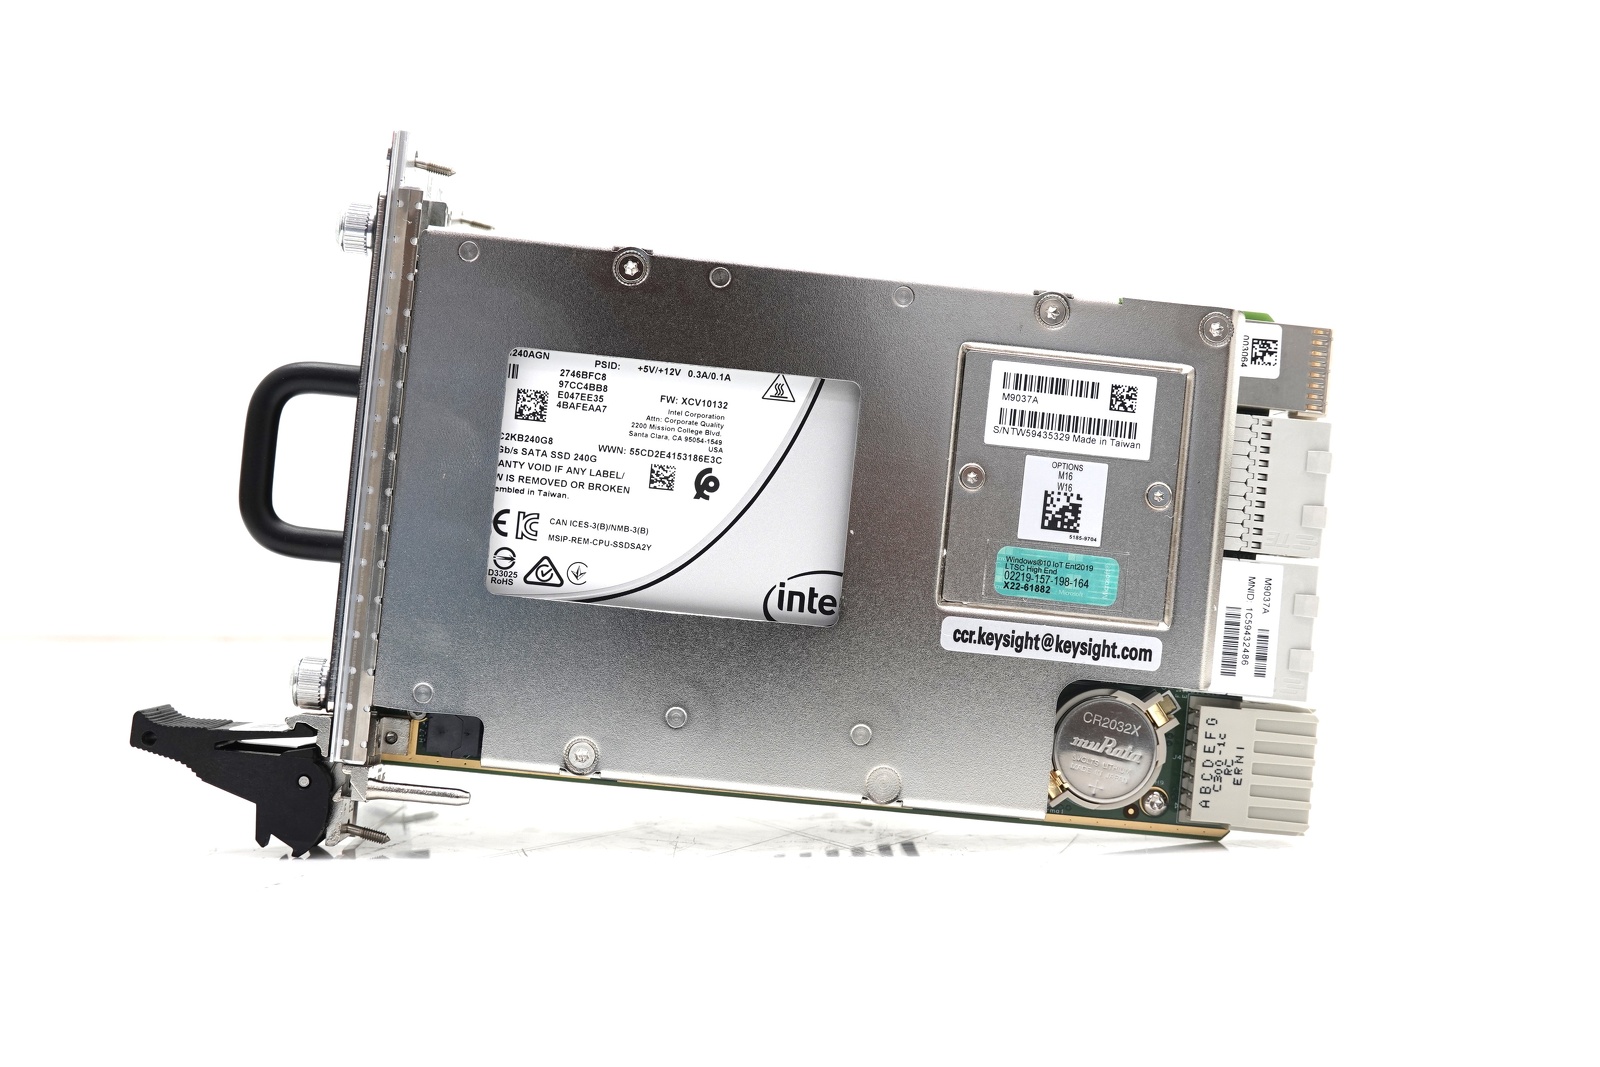 Keysight M9037A PXIe Embedded Controller / Intel i7 / 4GB RAM / 240GB SSD